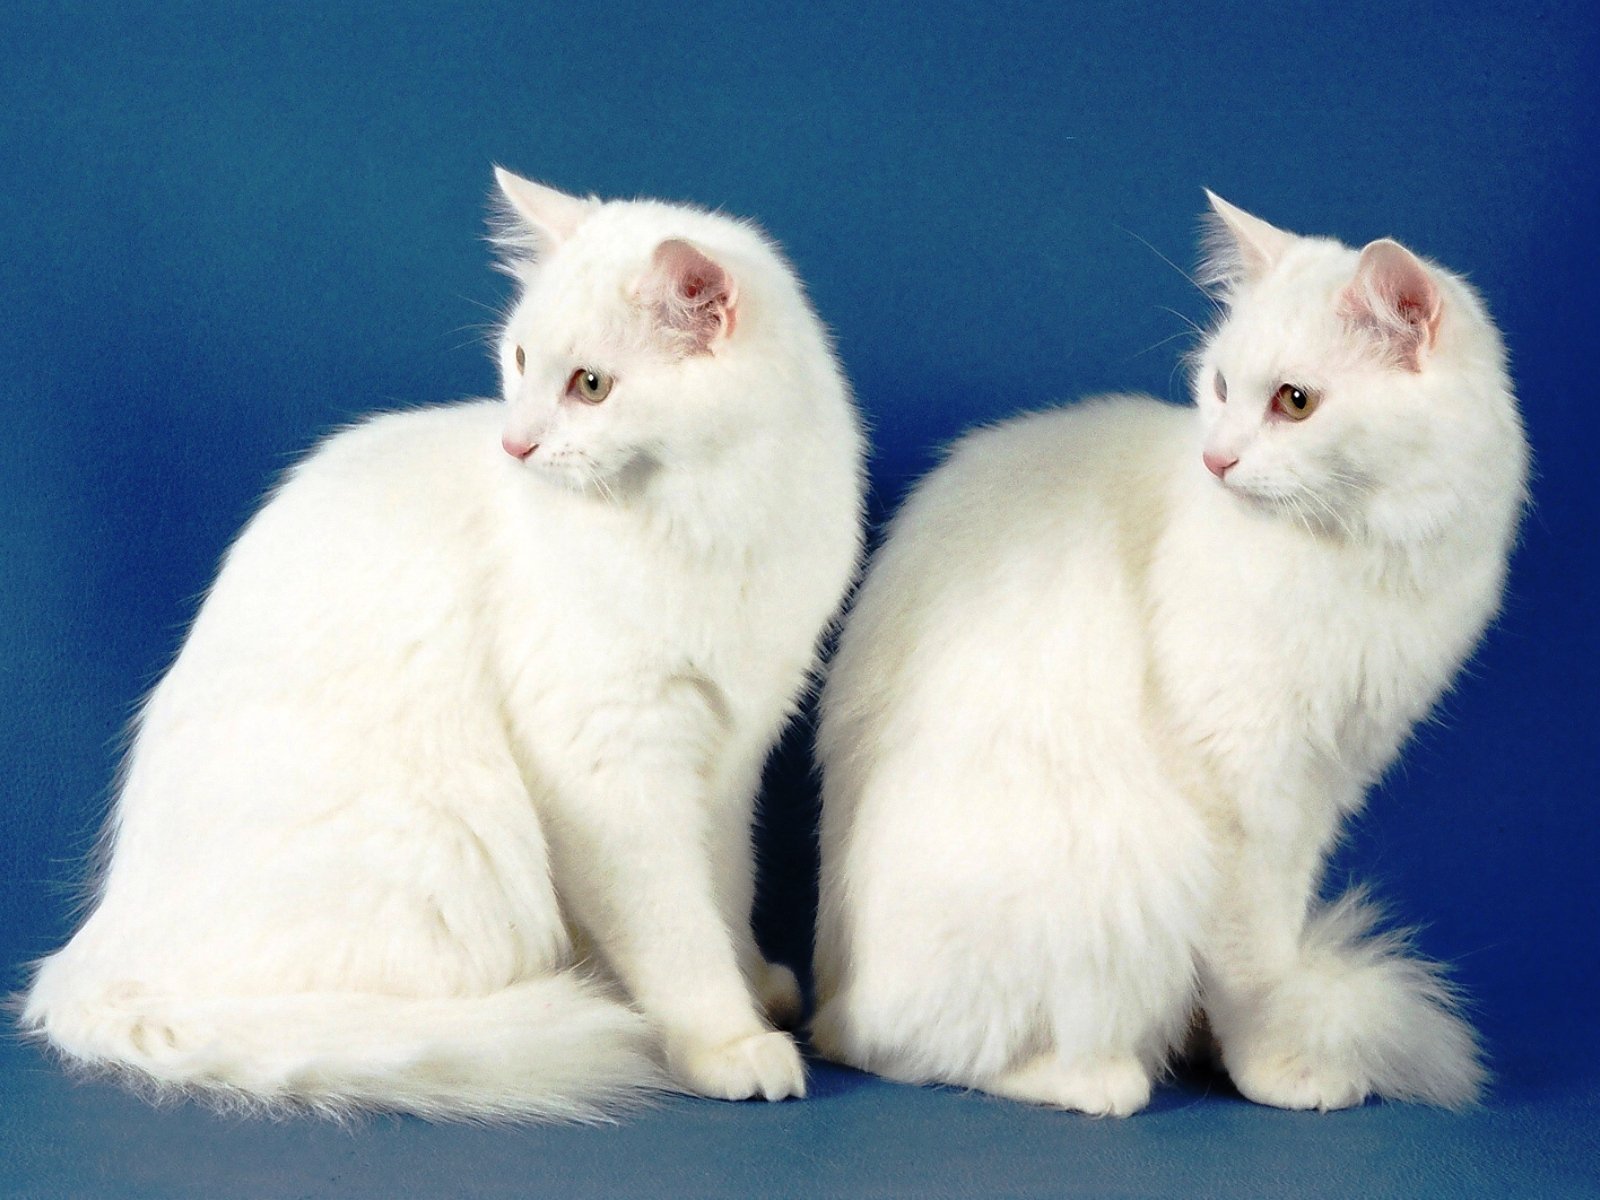 Как называется белая порода кошек. Ангорская кошка. Турецкая ангора биколор. Турецкая ангорская кошка. Белая ангорская кошка.